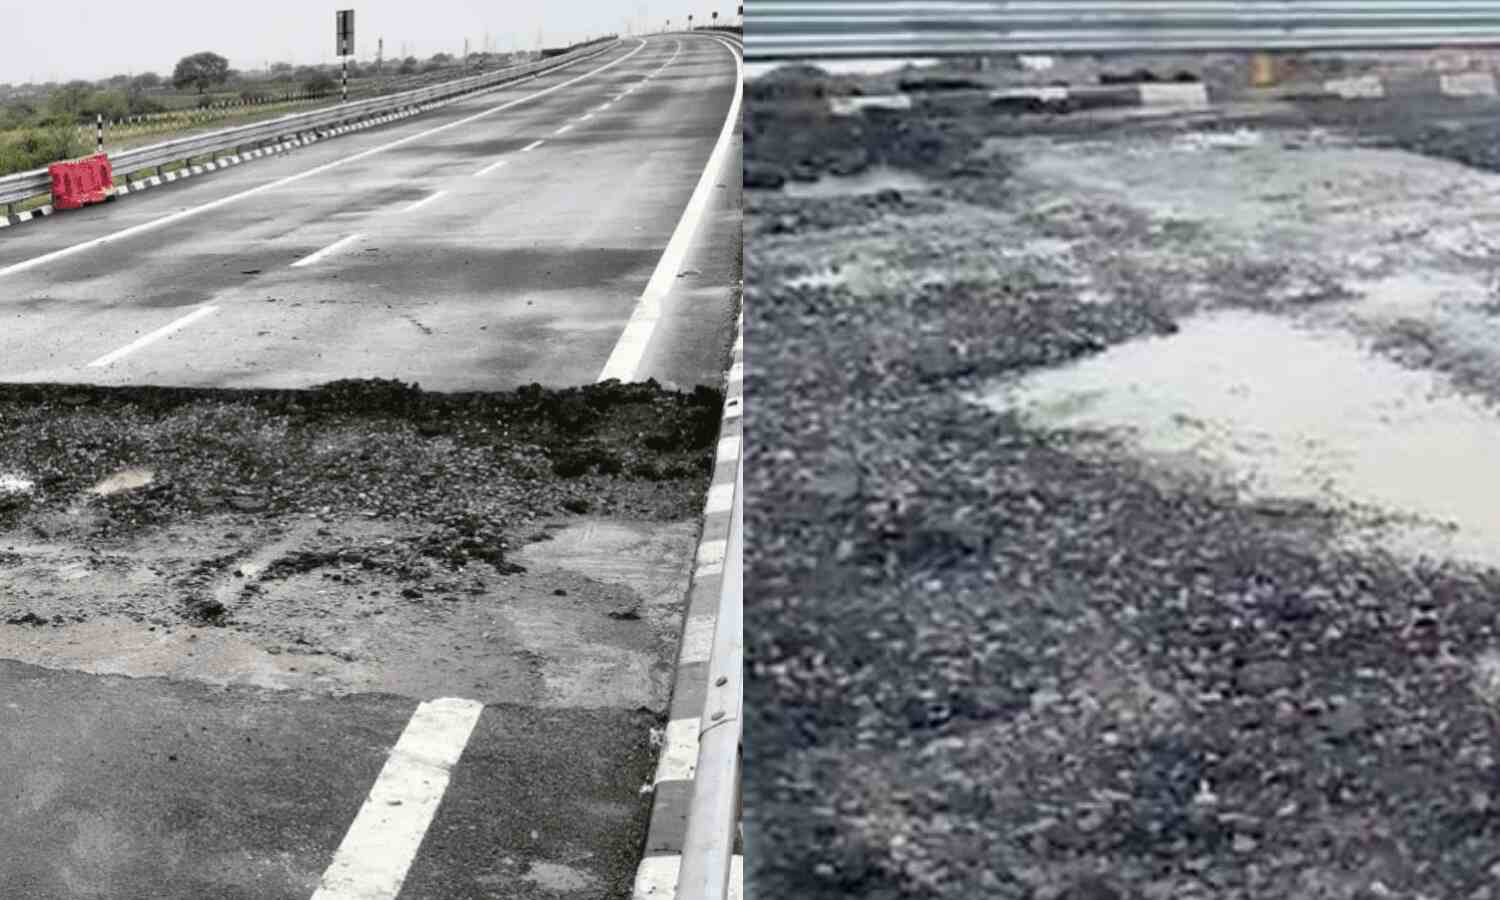 Bundelkhand Expressway : मोदी जी ने जिस बुंदेलखंड एक्सप्रेसवे का 4 दिन पहले किया था उद्घाटन, वह पहली बारिश में ही गया धंस